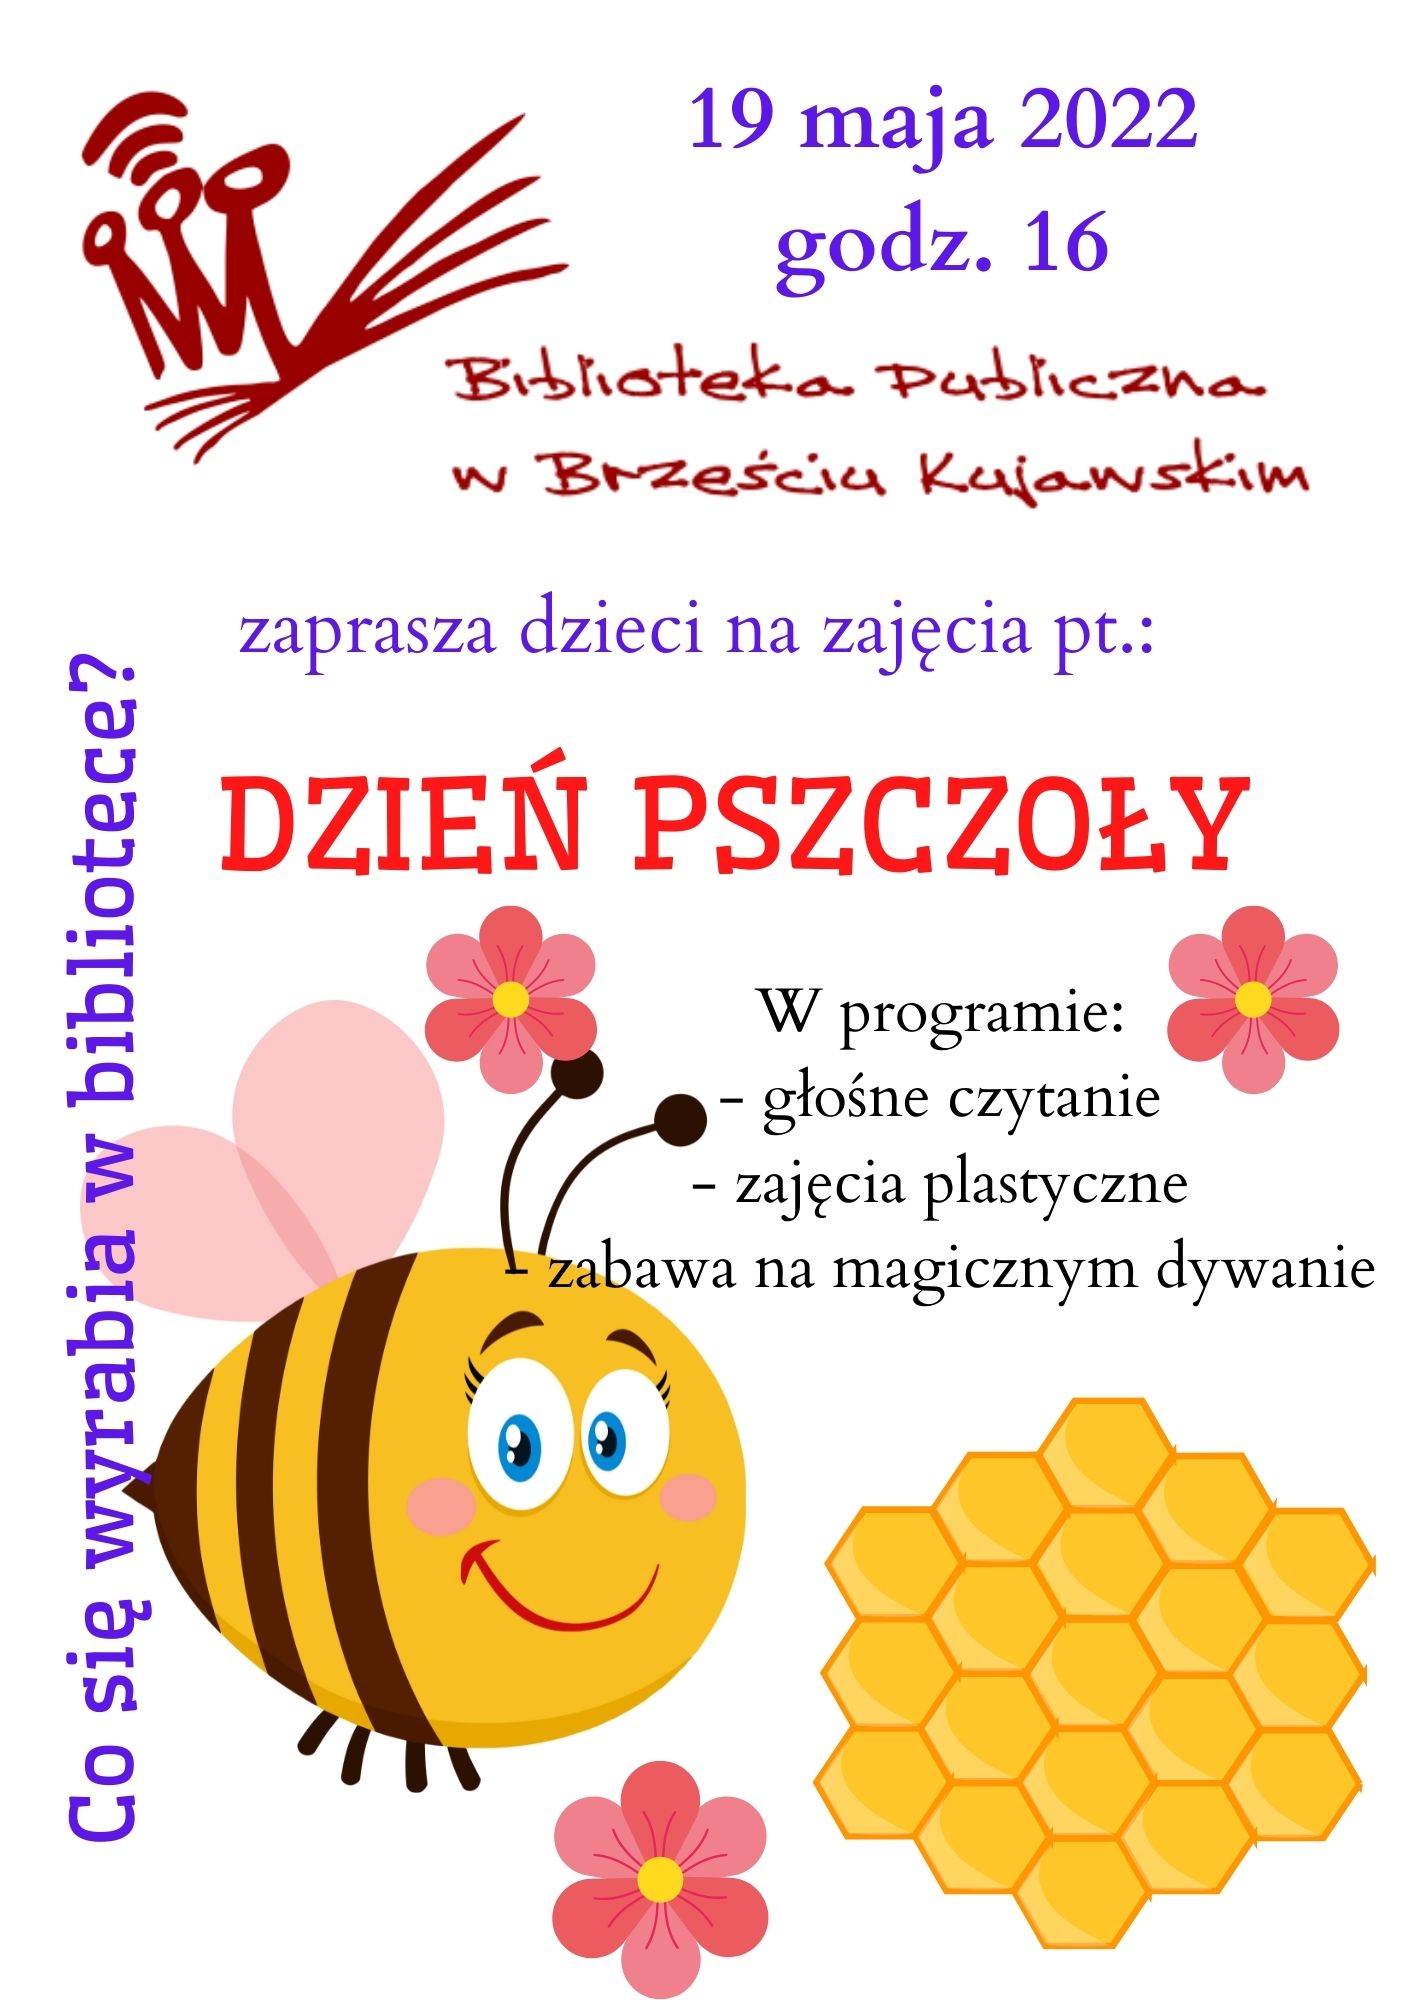 Dzień pszczoły 2022.jpg